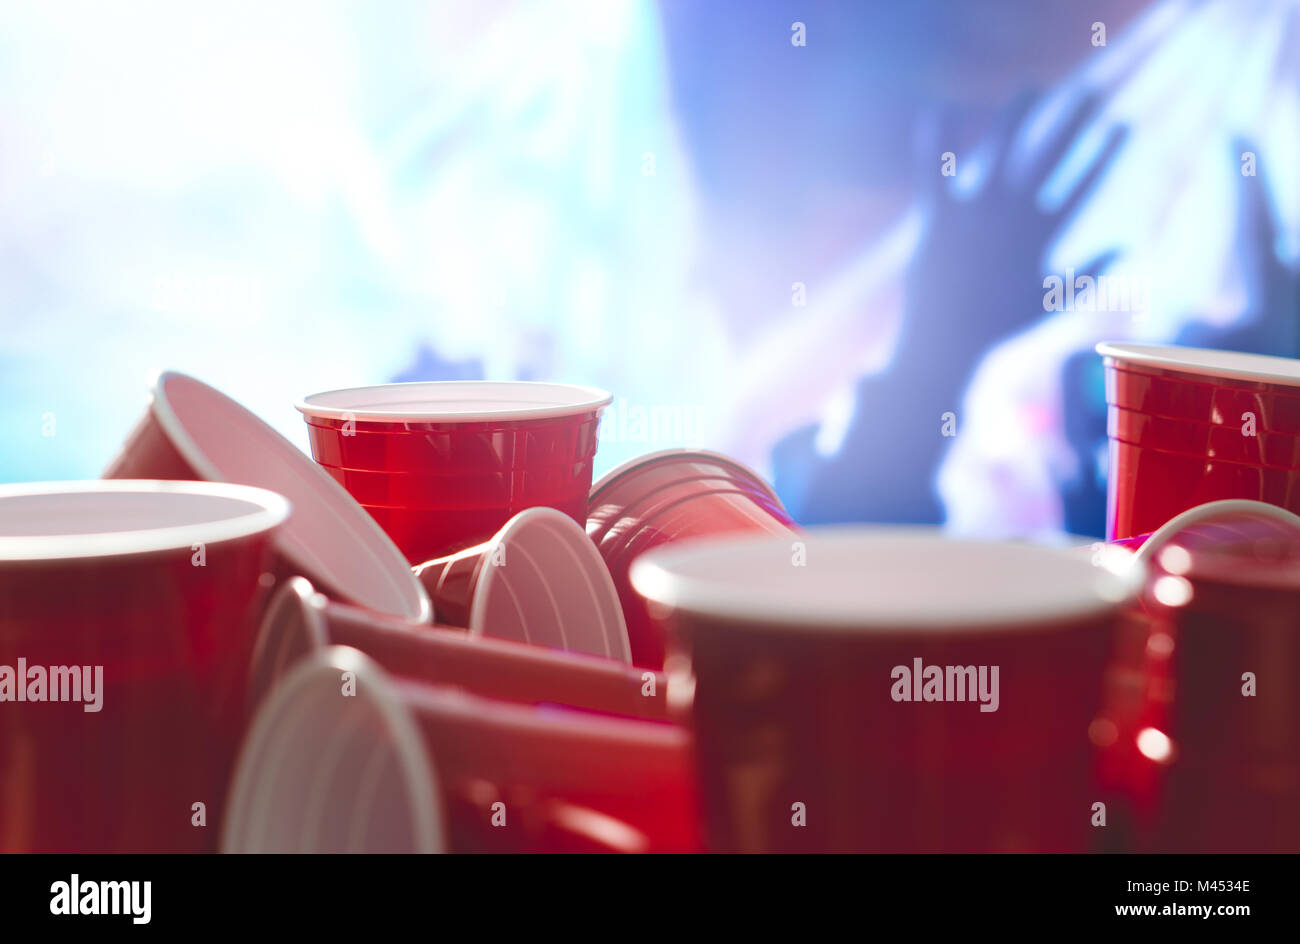 Viele rote Partei Cups mit unscharfen feiern die Menschen in den Hintergrund. College Alkohol Behältnisse in gemischten Positionen. Stockfoto